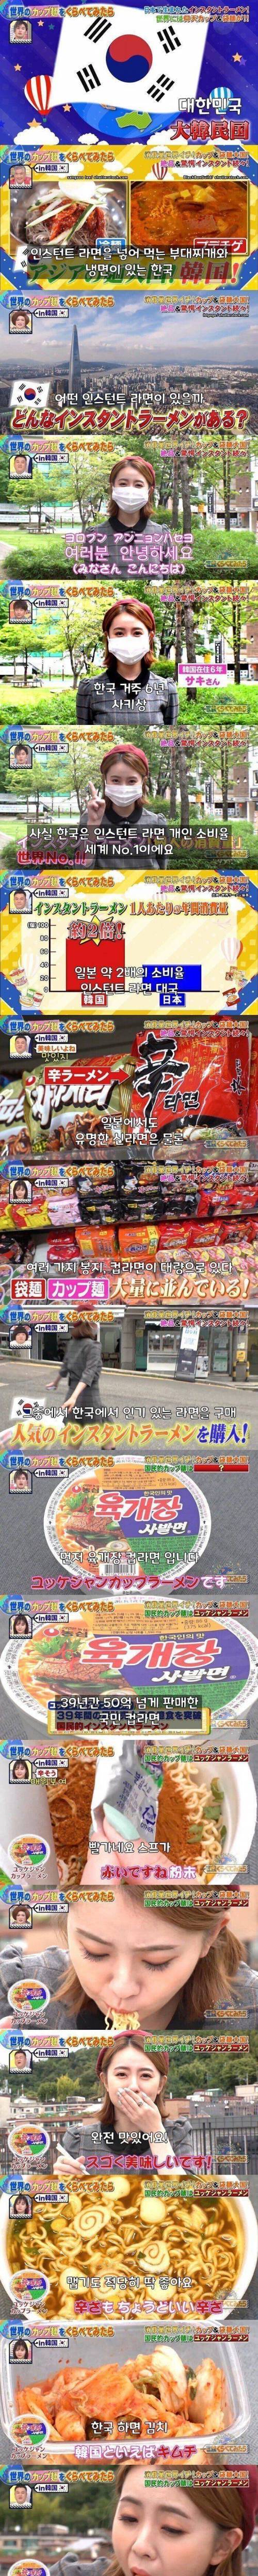 14 일본의 한국 인스턴트 라면 소개 방송.jpg